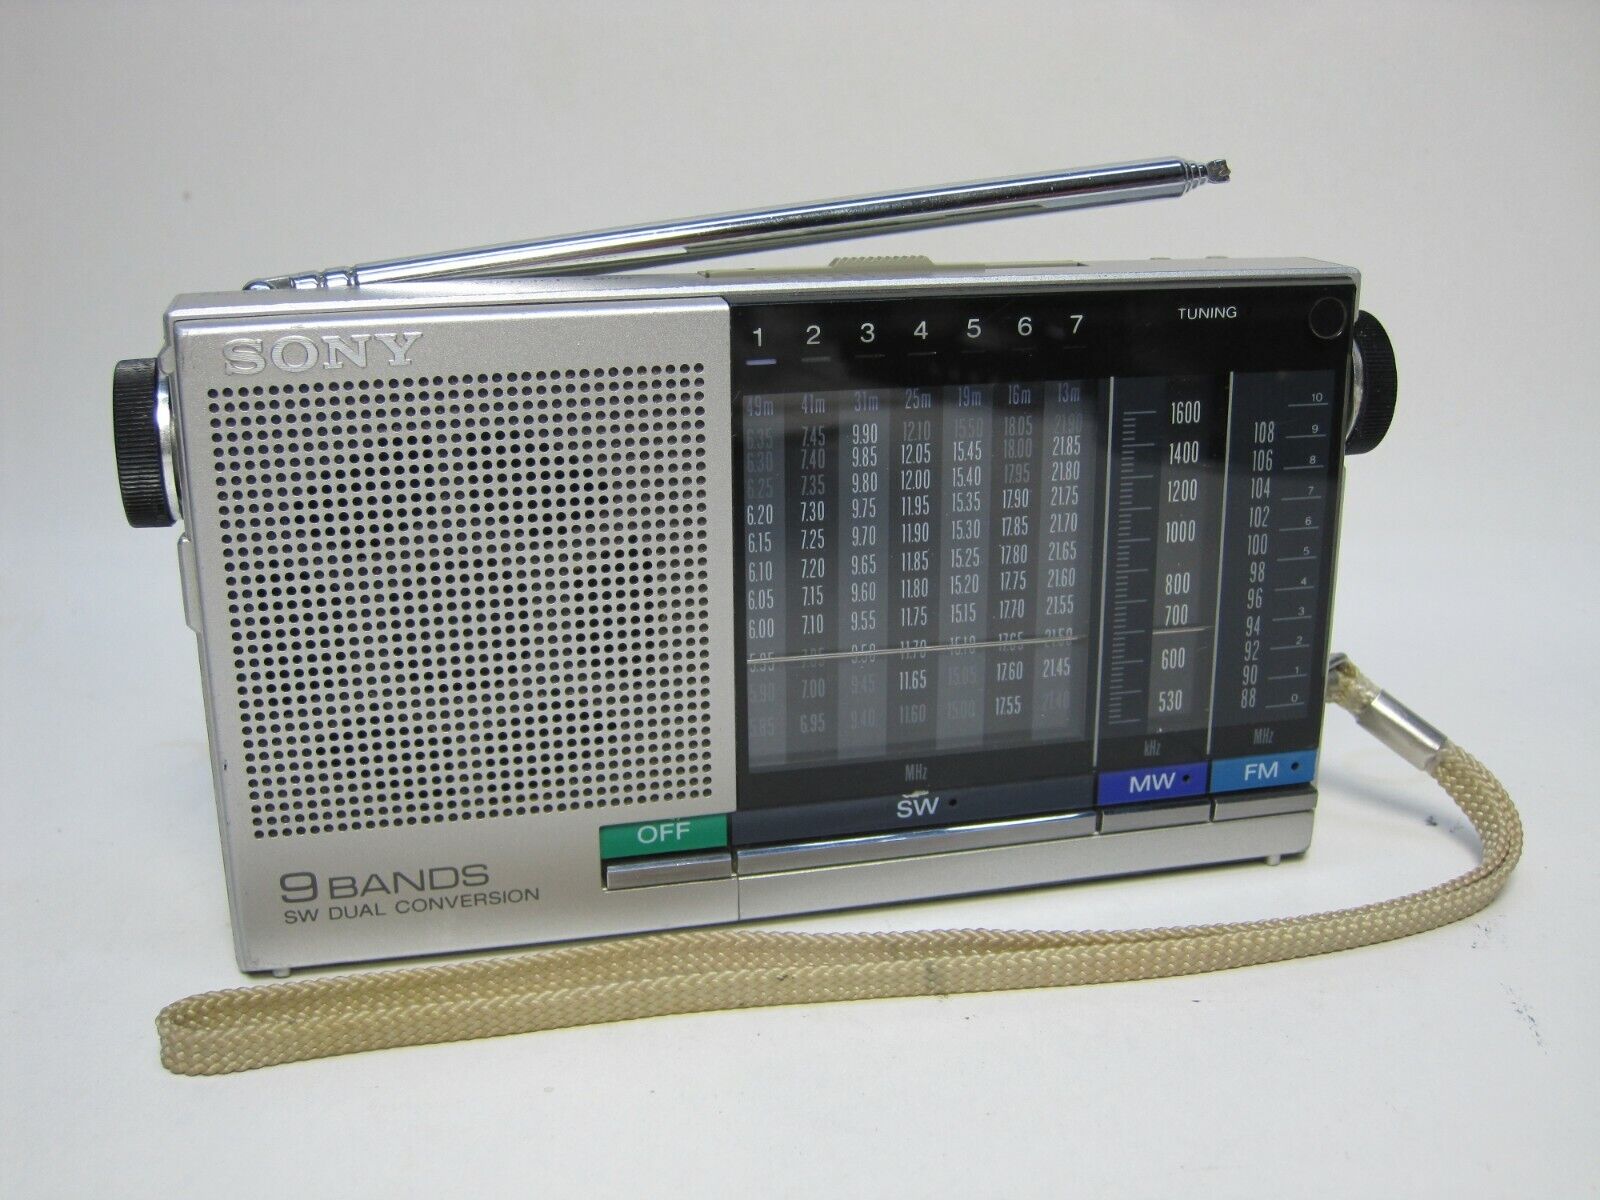 Vintage Sony ICF-4900 Shortwave Radio AM/FM/MW/SW 9Band Receiver Popularność sprzedaży